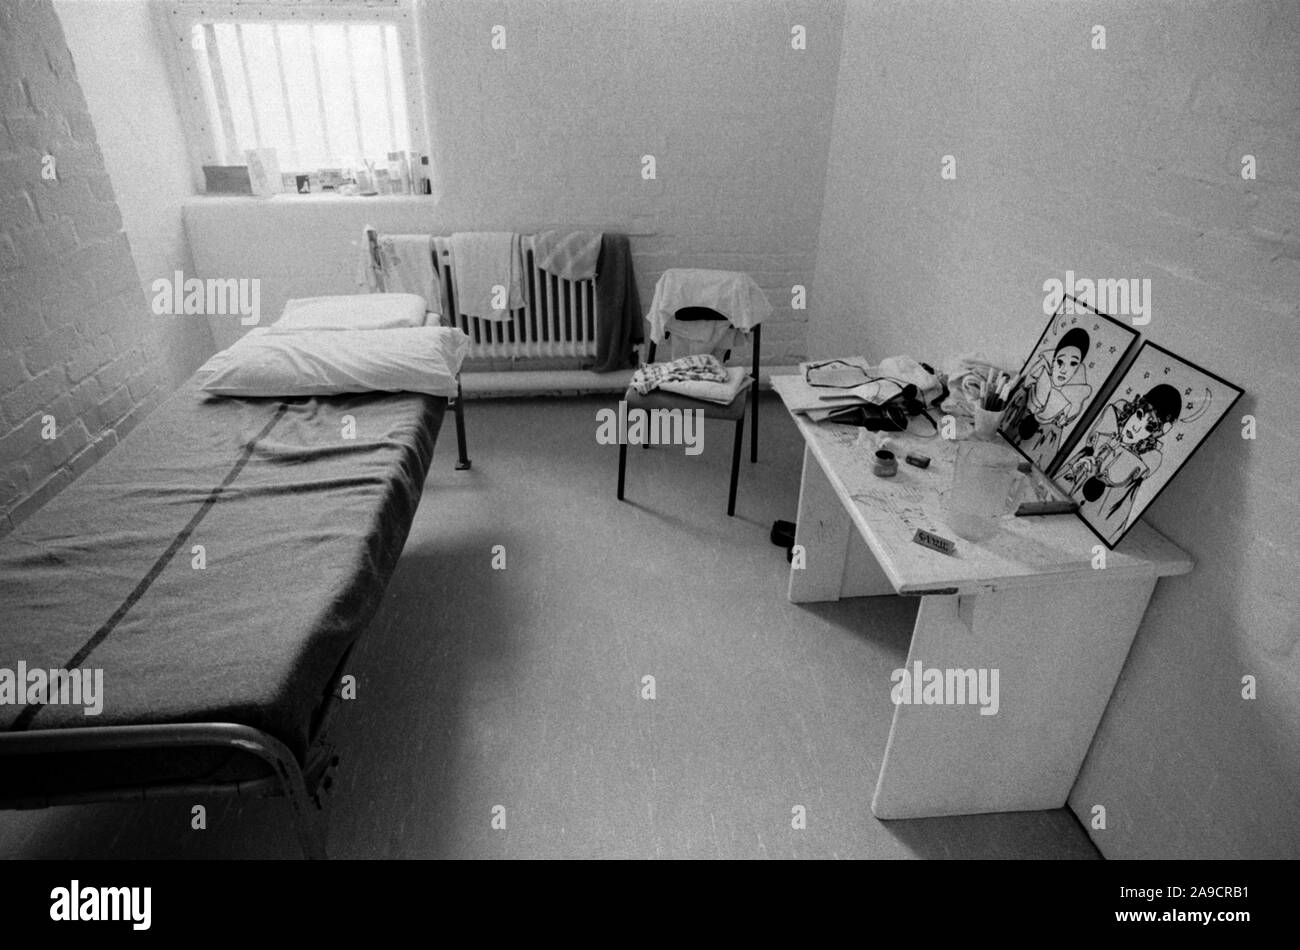 Gefängniszelle Großbritannien der 80er Jahre. Gefangenen Zelle mit Gefangenen Besitztümer. HM Prison Styal Wilmslow Cheshire England 1986 HOMER SYKES Stockfoto